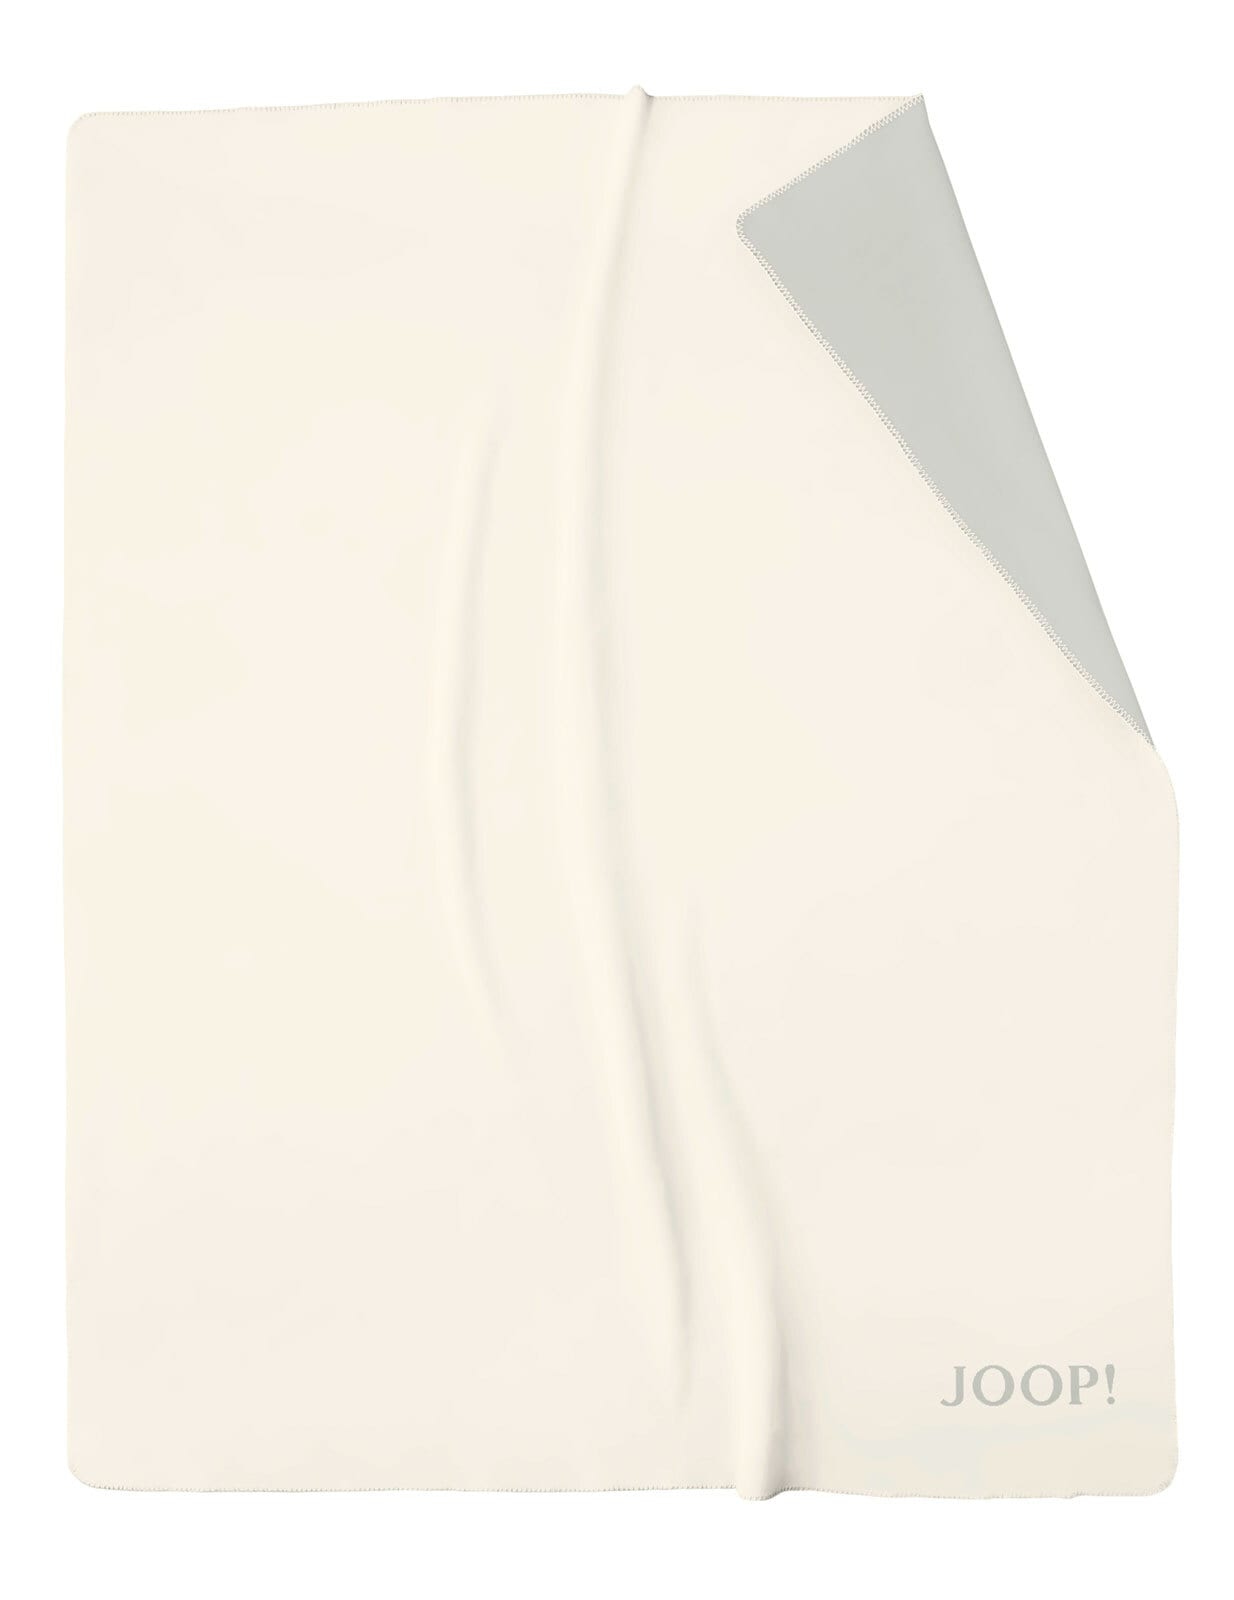 JOOP! Uni-Wohndecke DOUBLEFACE 150 x 200 cm beige/grau